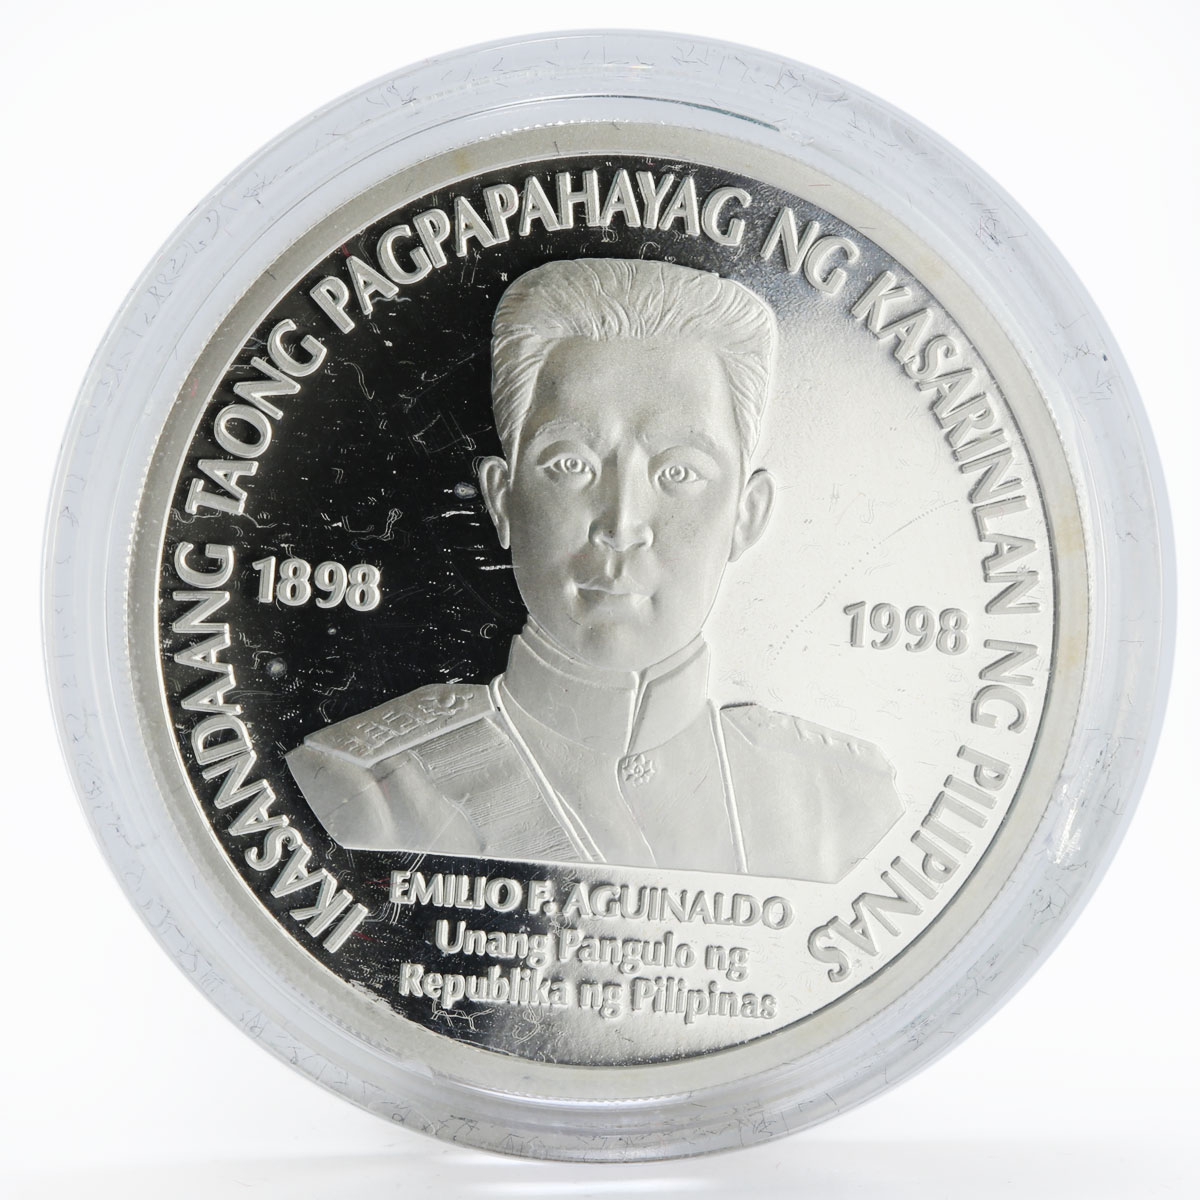 Philippines 500 Piso Ikasandaang Taong Pagpapahayag Ng Kasarinlan coin 1998